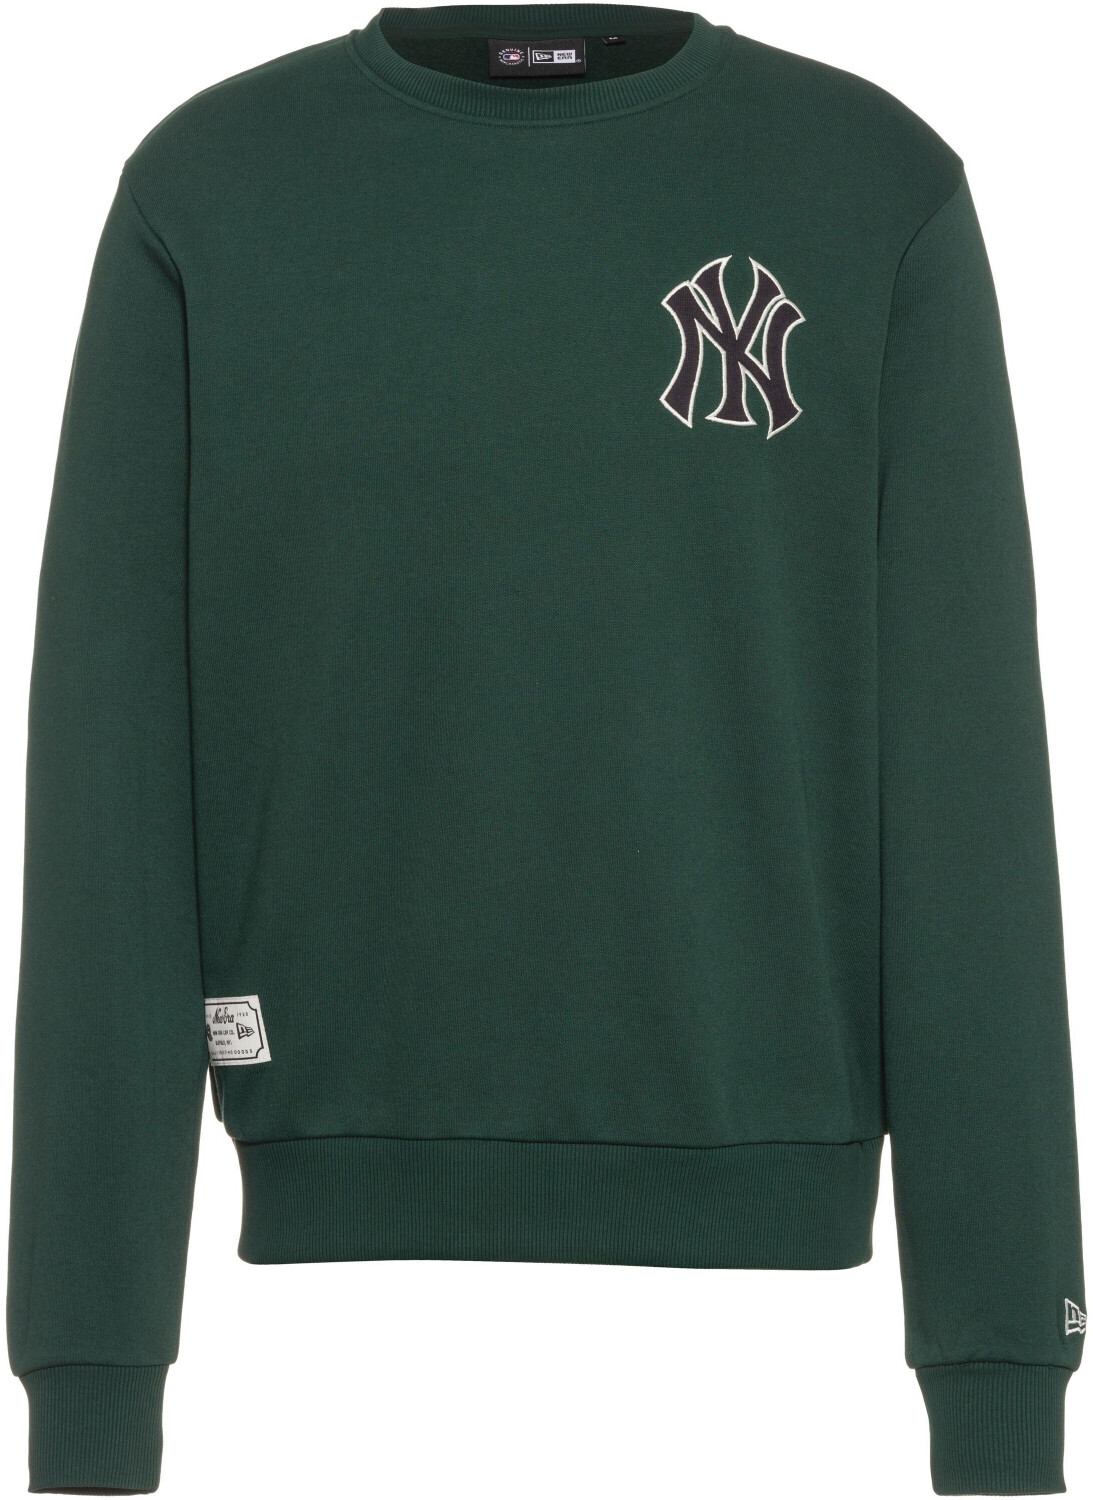 Hoodies and sweatshirts New Era New York Yankees MLB Heritage